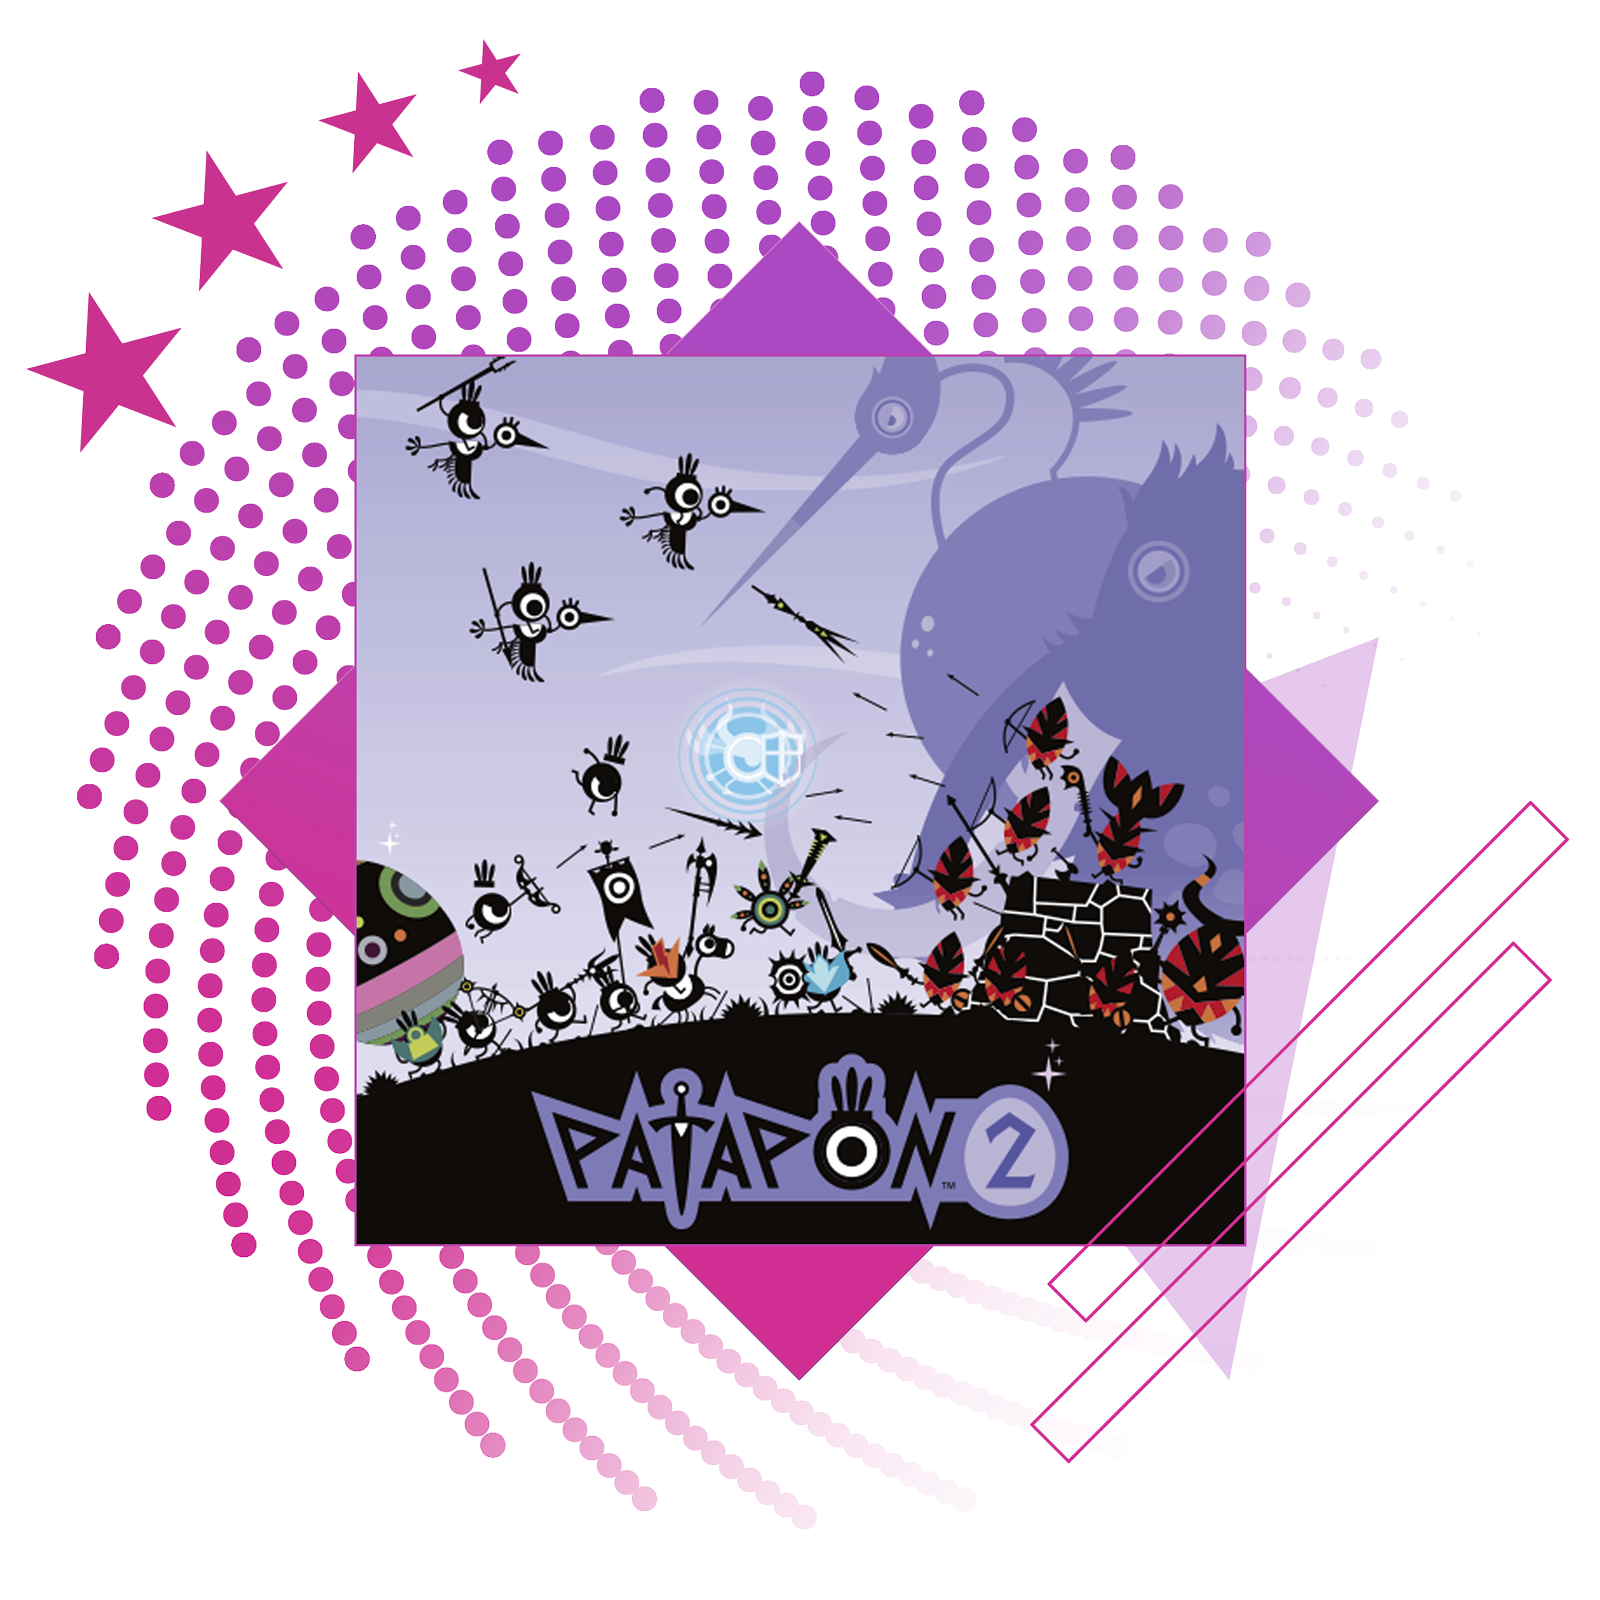 Image de présentation des meilleurs jeux de rythme, avec des illustrations et du gameplay clés de Patapon 2 Remastered.